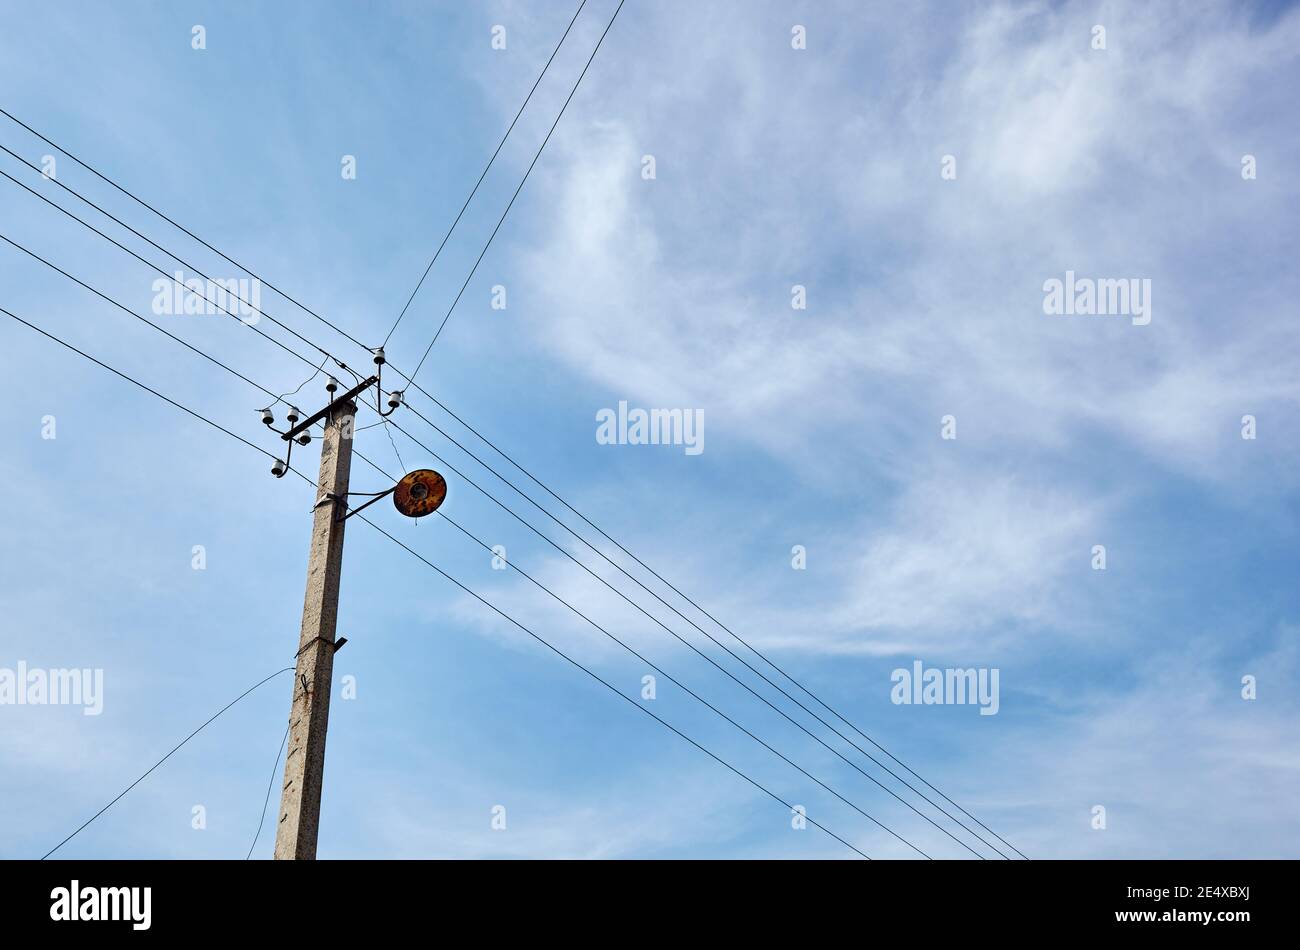 Nahaufnahme der alten Säule an einem Sommertag. Stromlinienpfosten mit Stromkabeln gegen einen klaren blauen Himmel Stockfoto